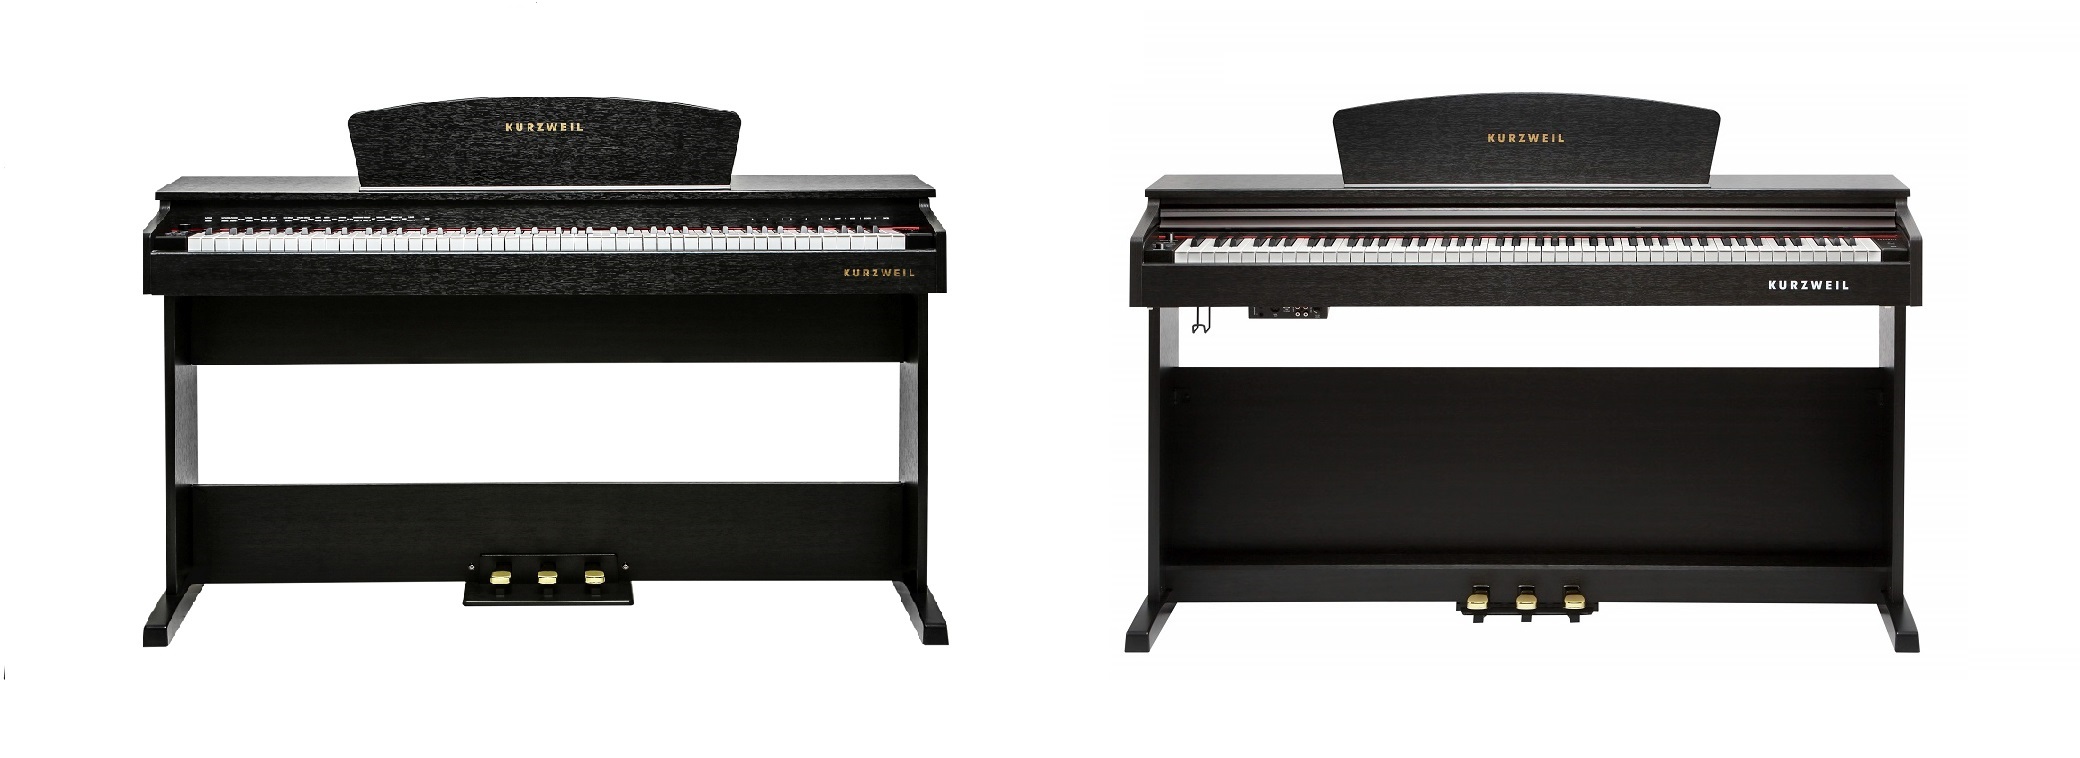 مقایسه پیانو دیجیتال Kurzweil M70 و Kurzweil M90